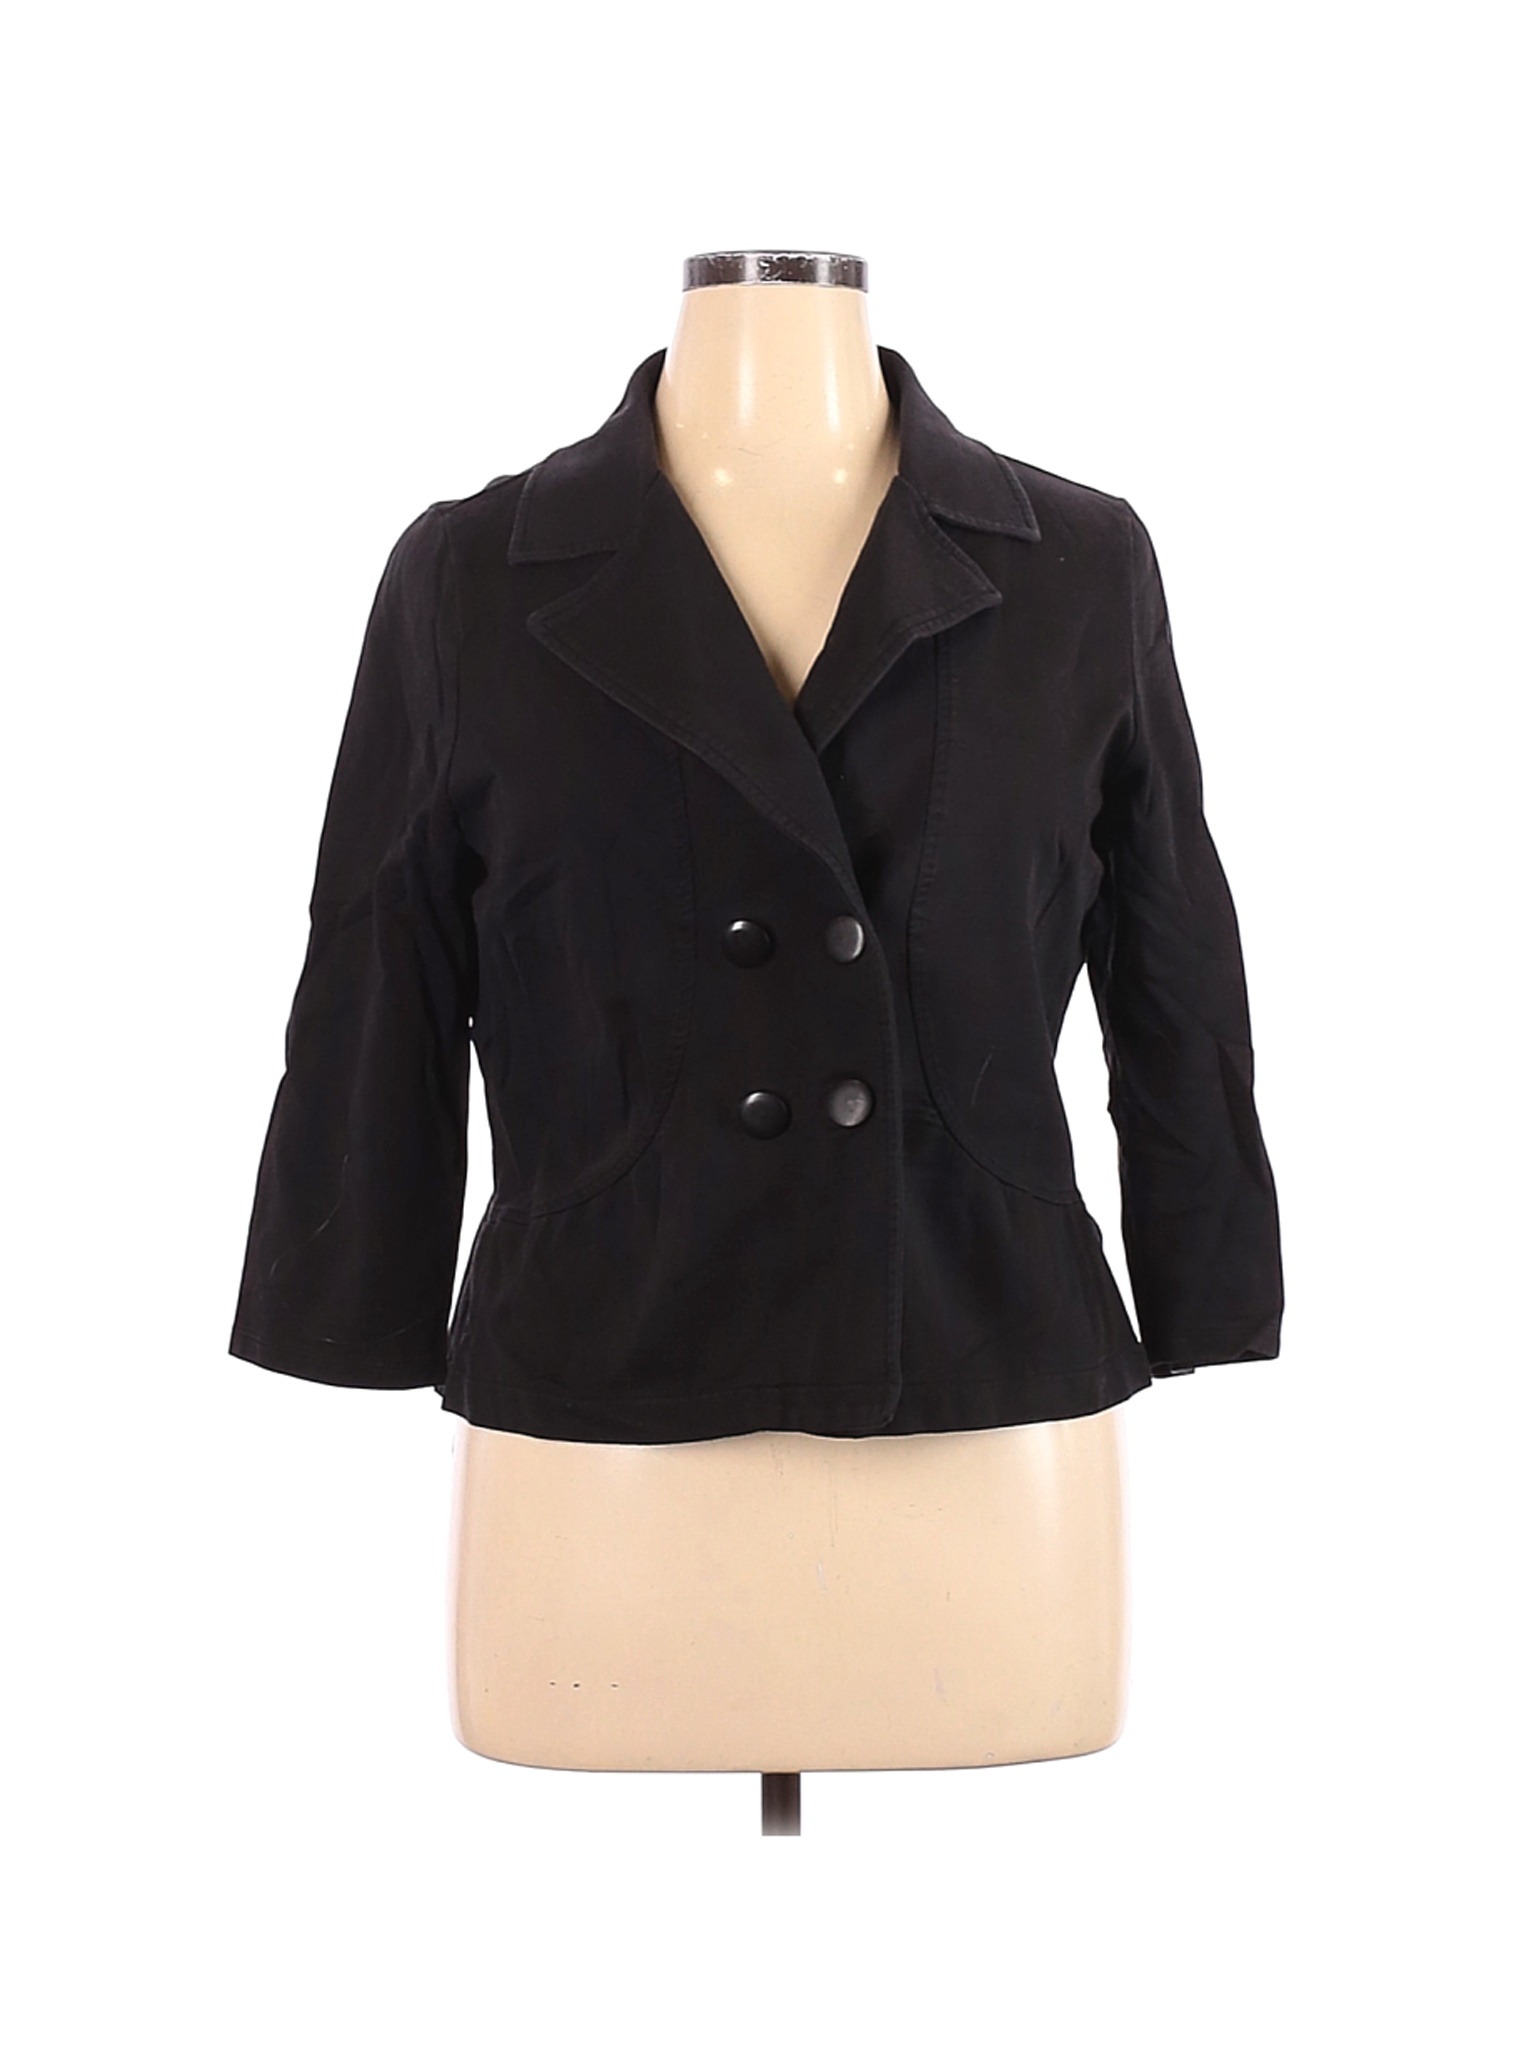 Ann Taylor LOFT Outlet Women Black Jacket XL | eBay